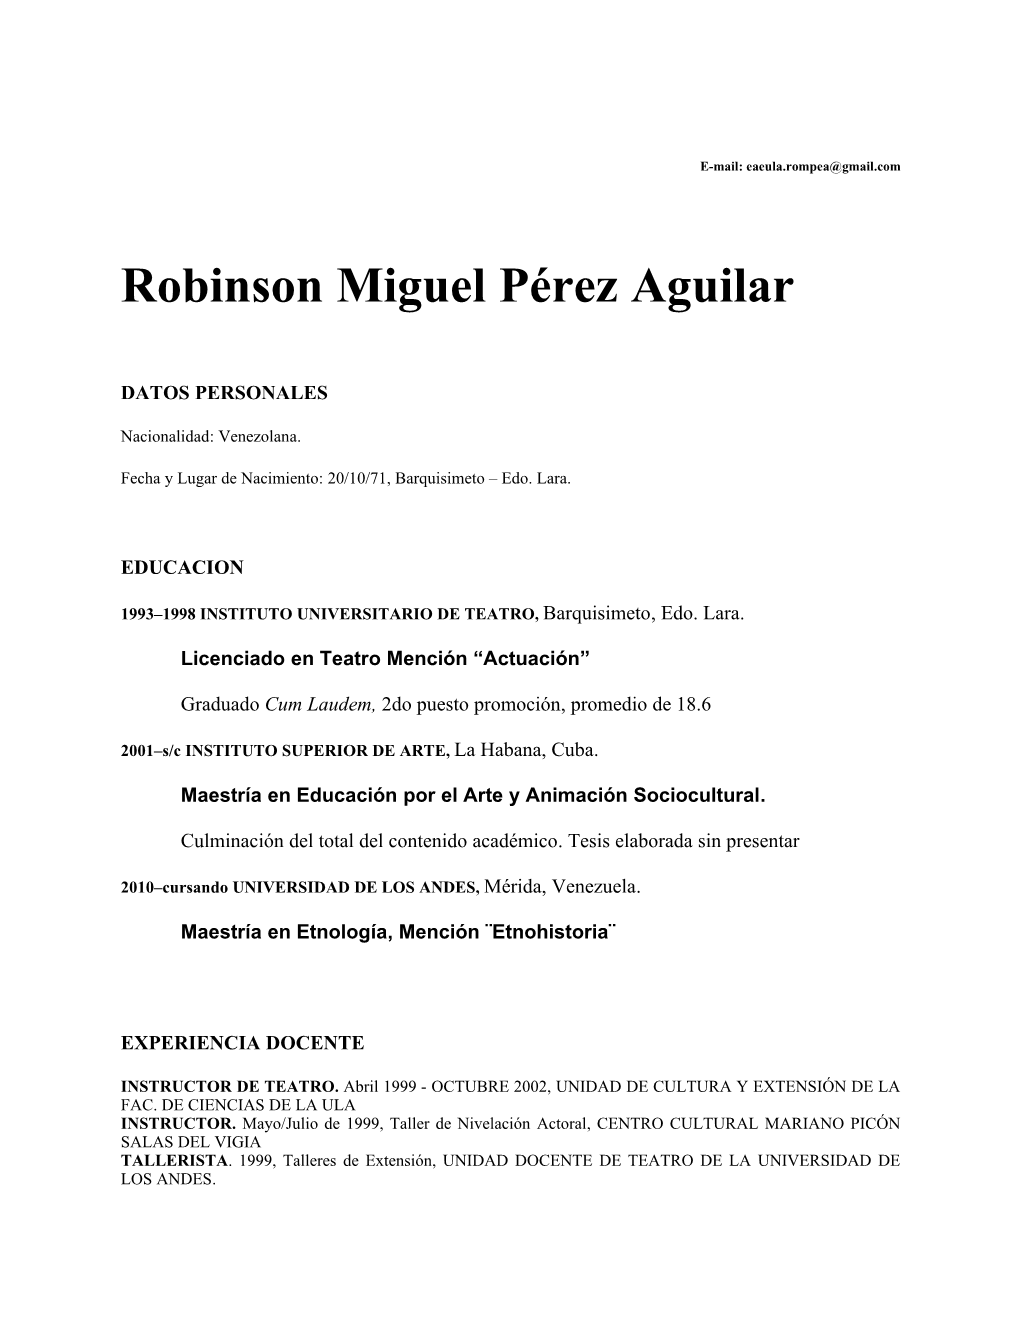 Robinson Miguel Pérez Aguilar